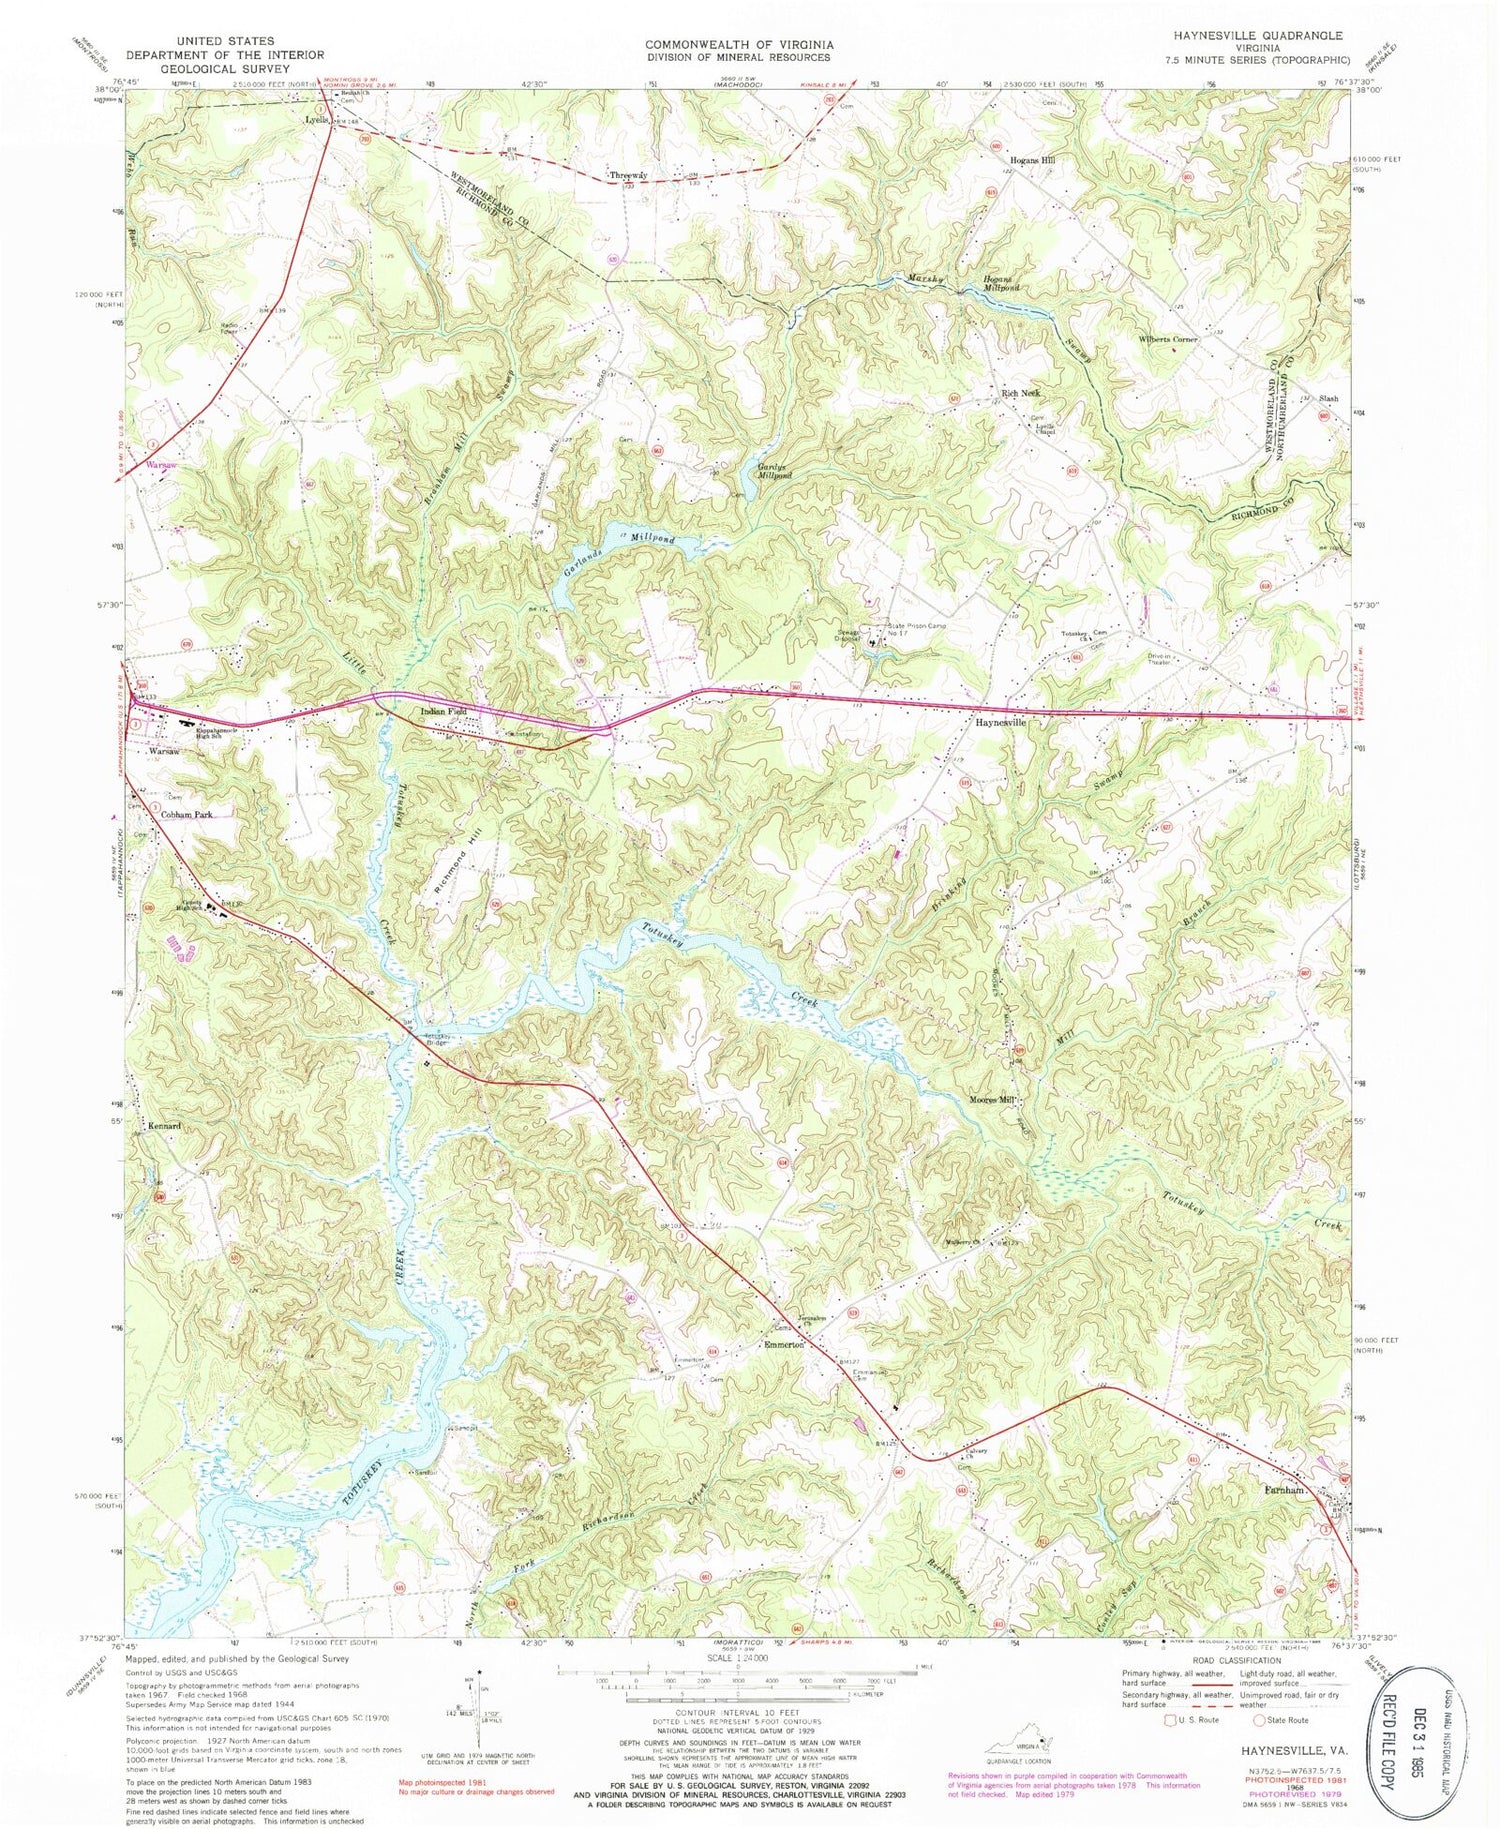 Classic USGS Haynesville Virginia 7.5'x7.5' Topo Map Image